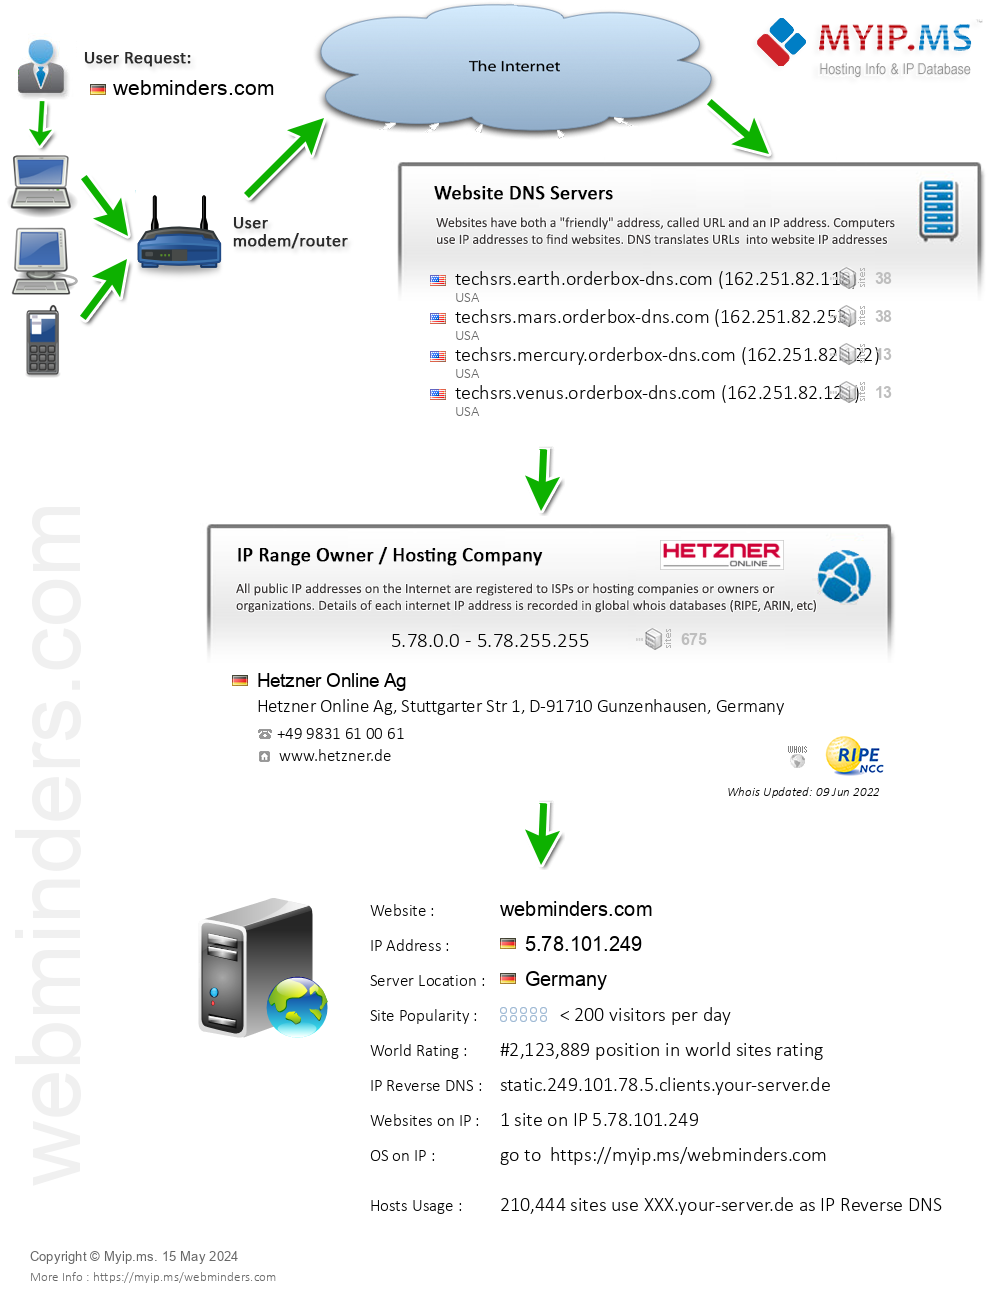 Webminders.com - Website Hosting Visual IP Diagram